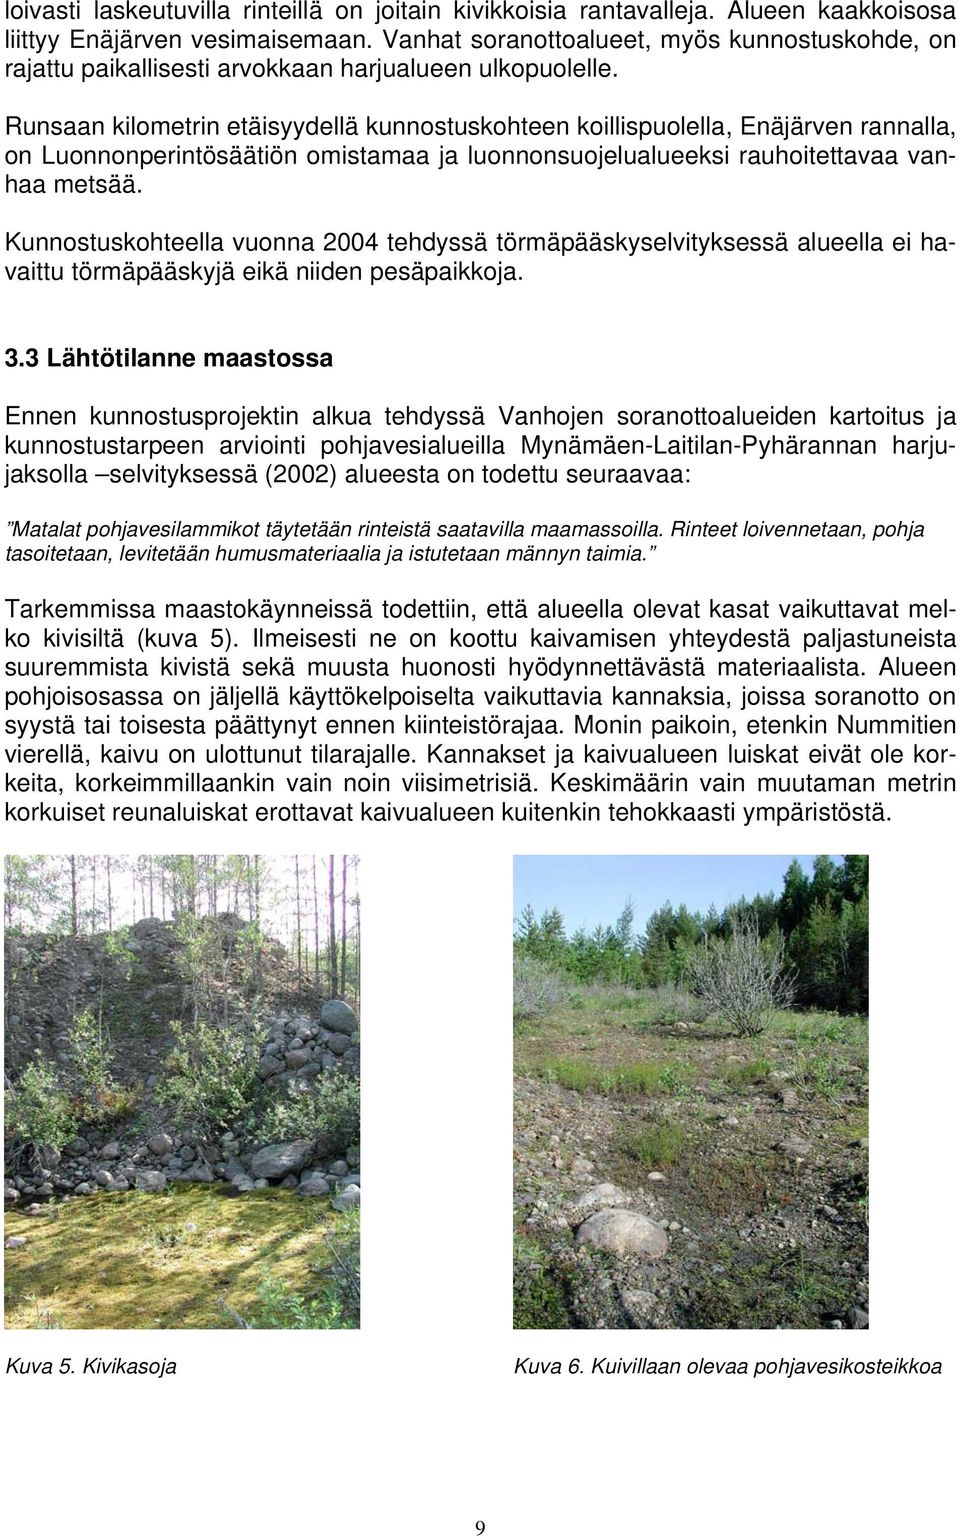 Runsaan kilometrin etäisyydellä kunnostuskohteen koillispuolella, Enäjärven rannalla, on Luonnonperintösäätiön omistamaa ja luonnonsuojelualueeksi rauhoitettavaa vanhaa metsää.